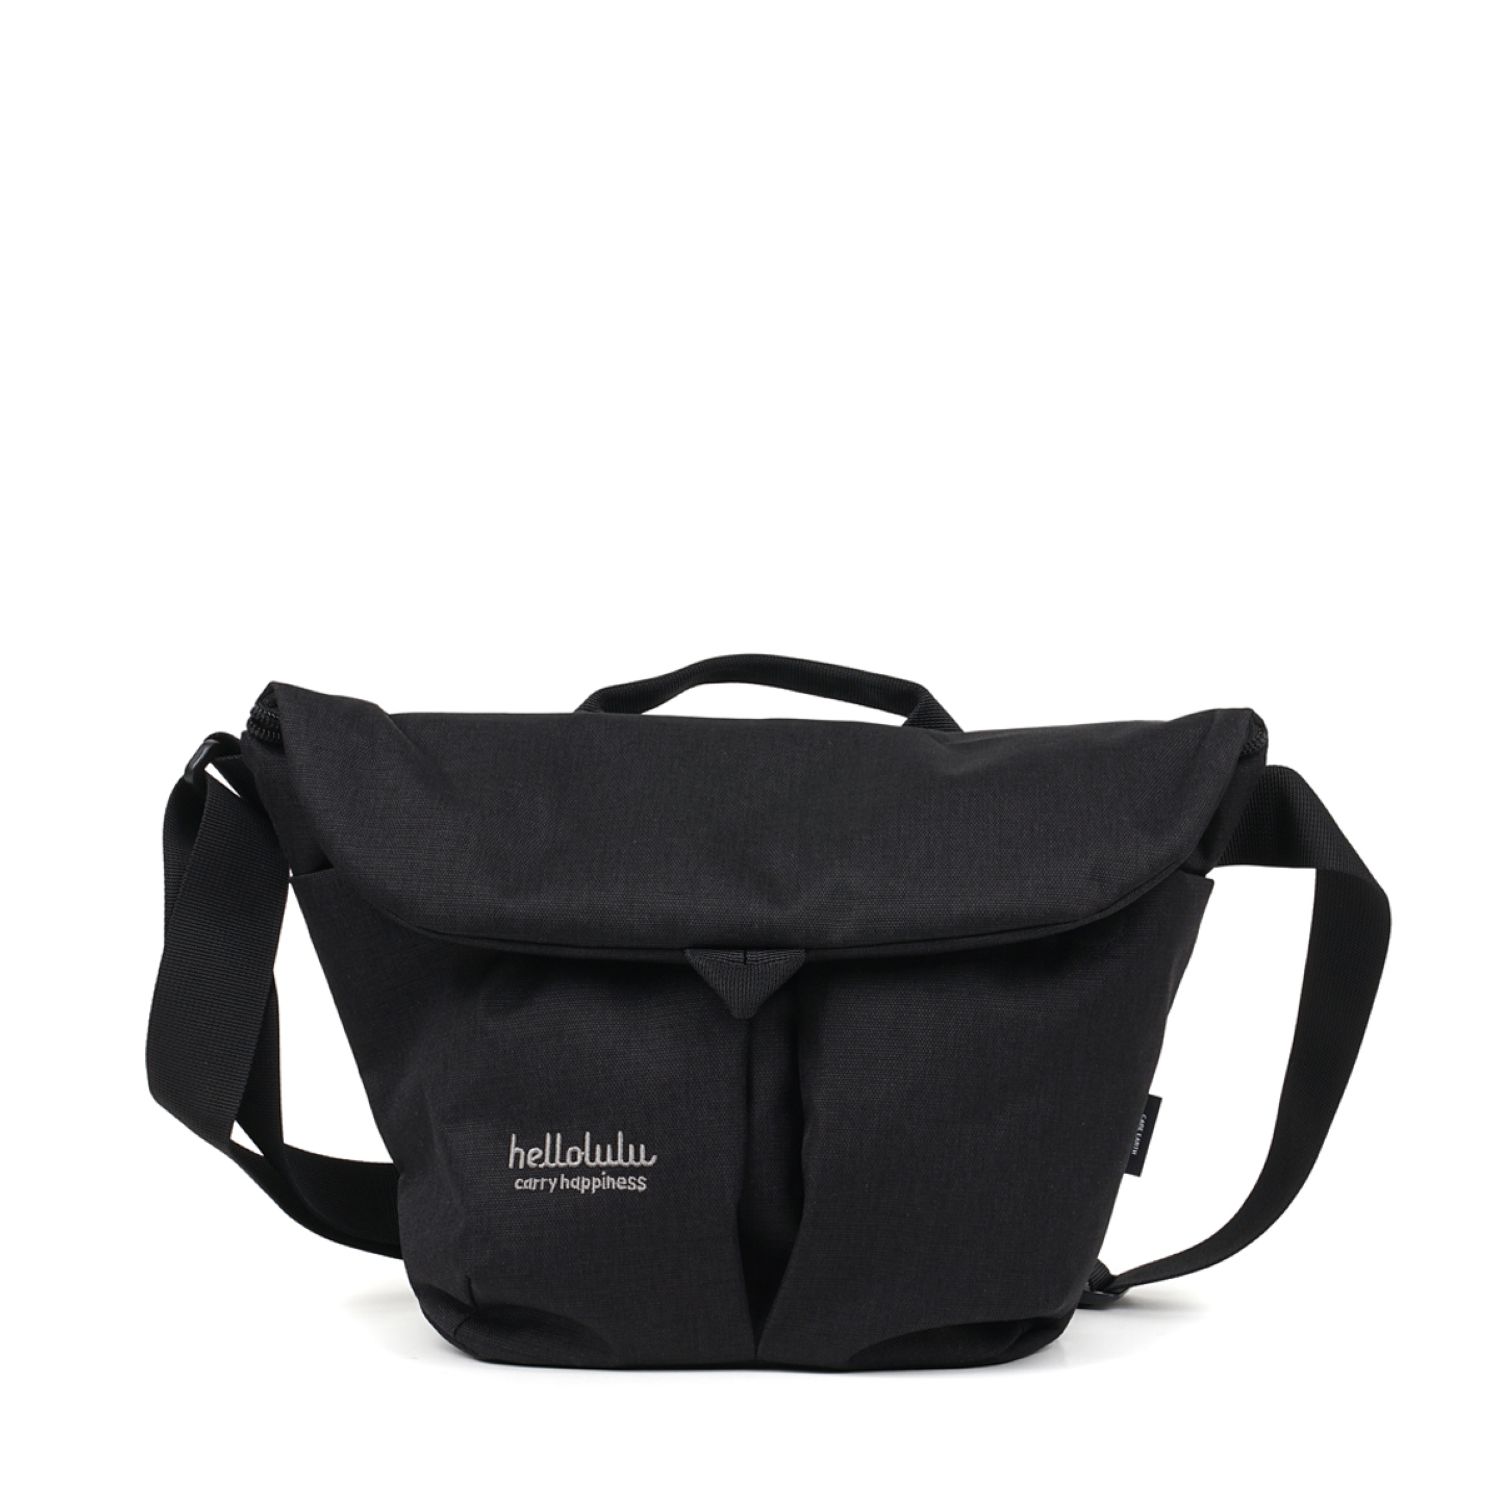 Hellolulu-Kasen-Shoulder-Bag-Recycled-Black-1-1.jpg